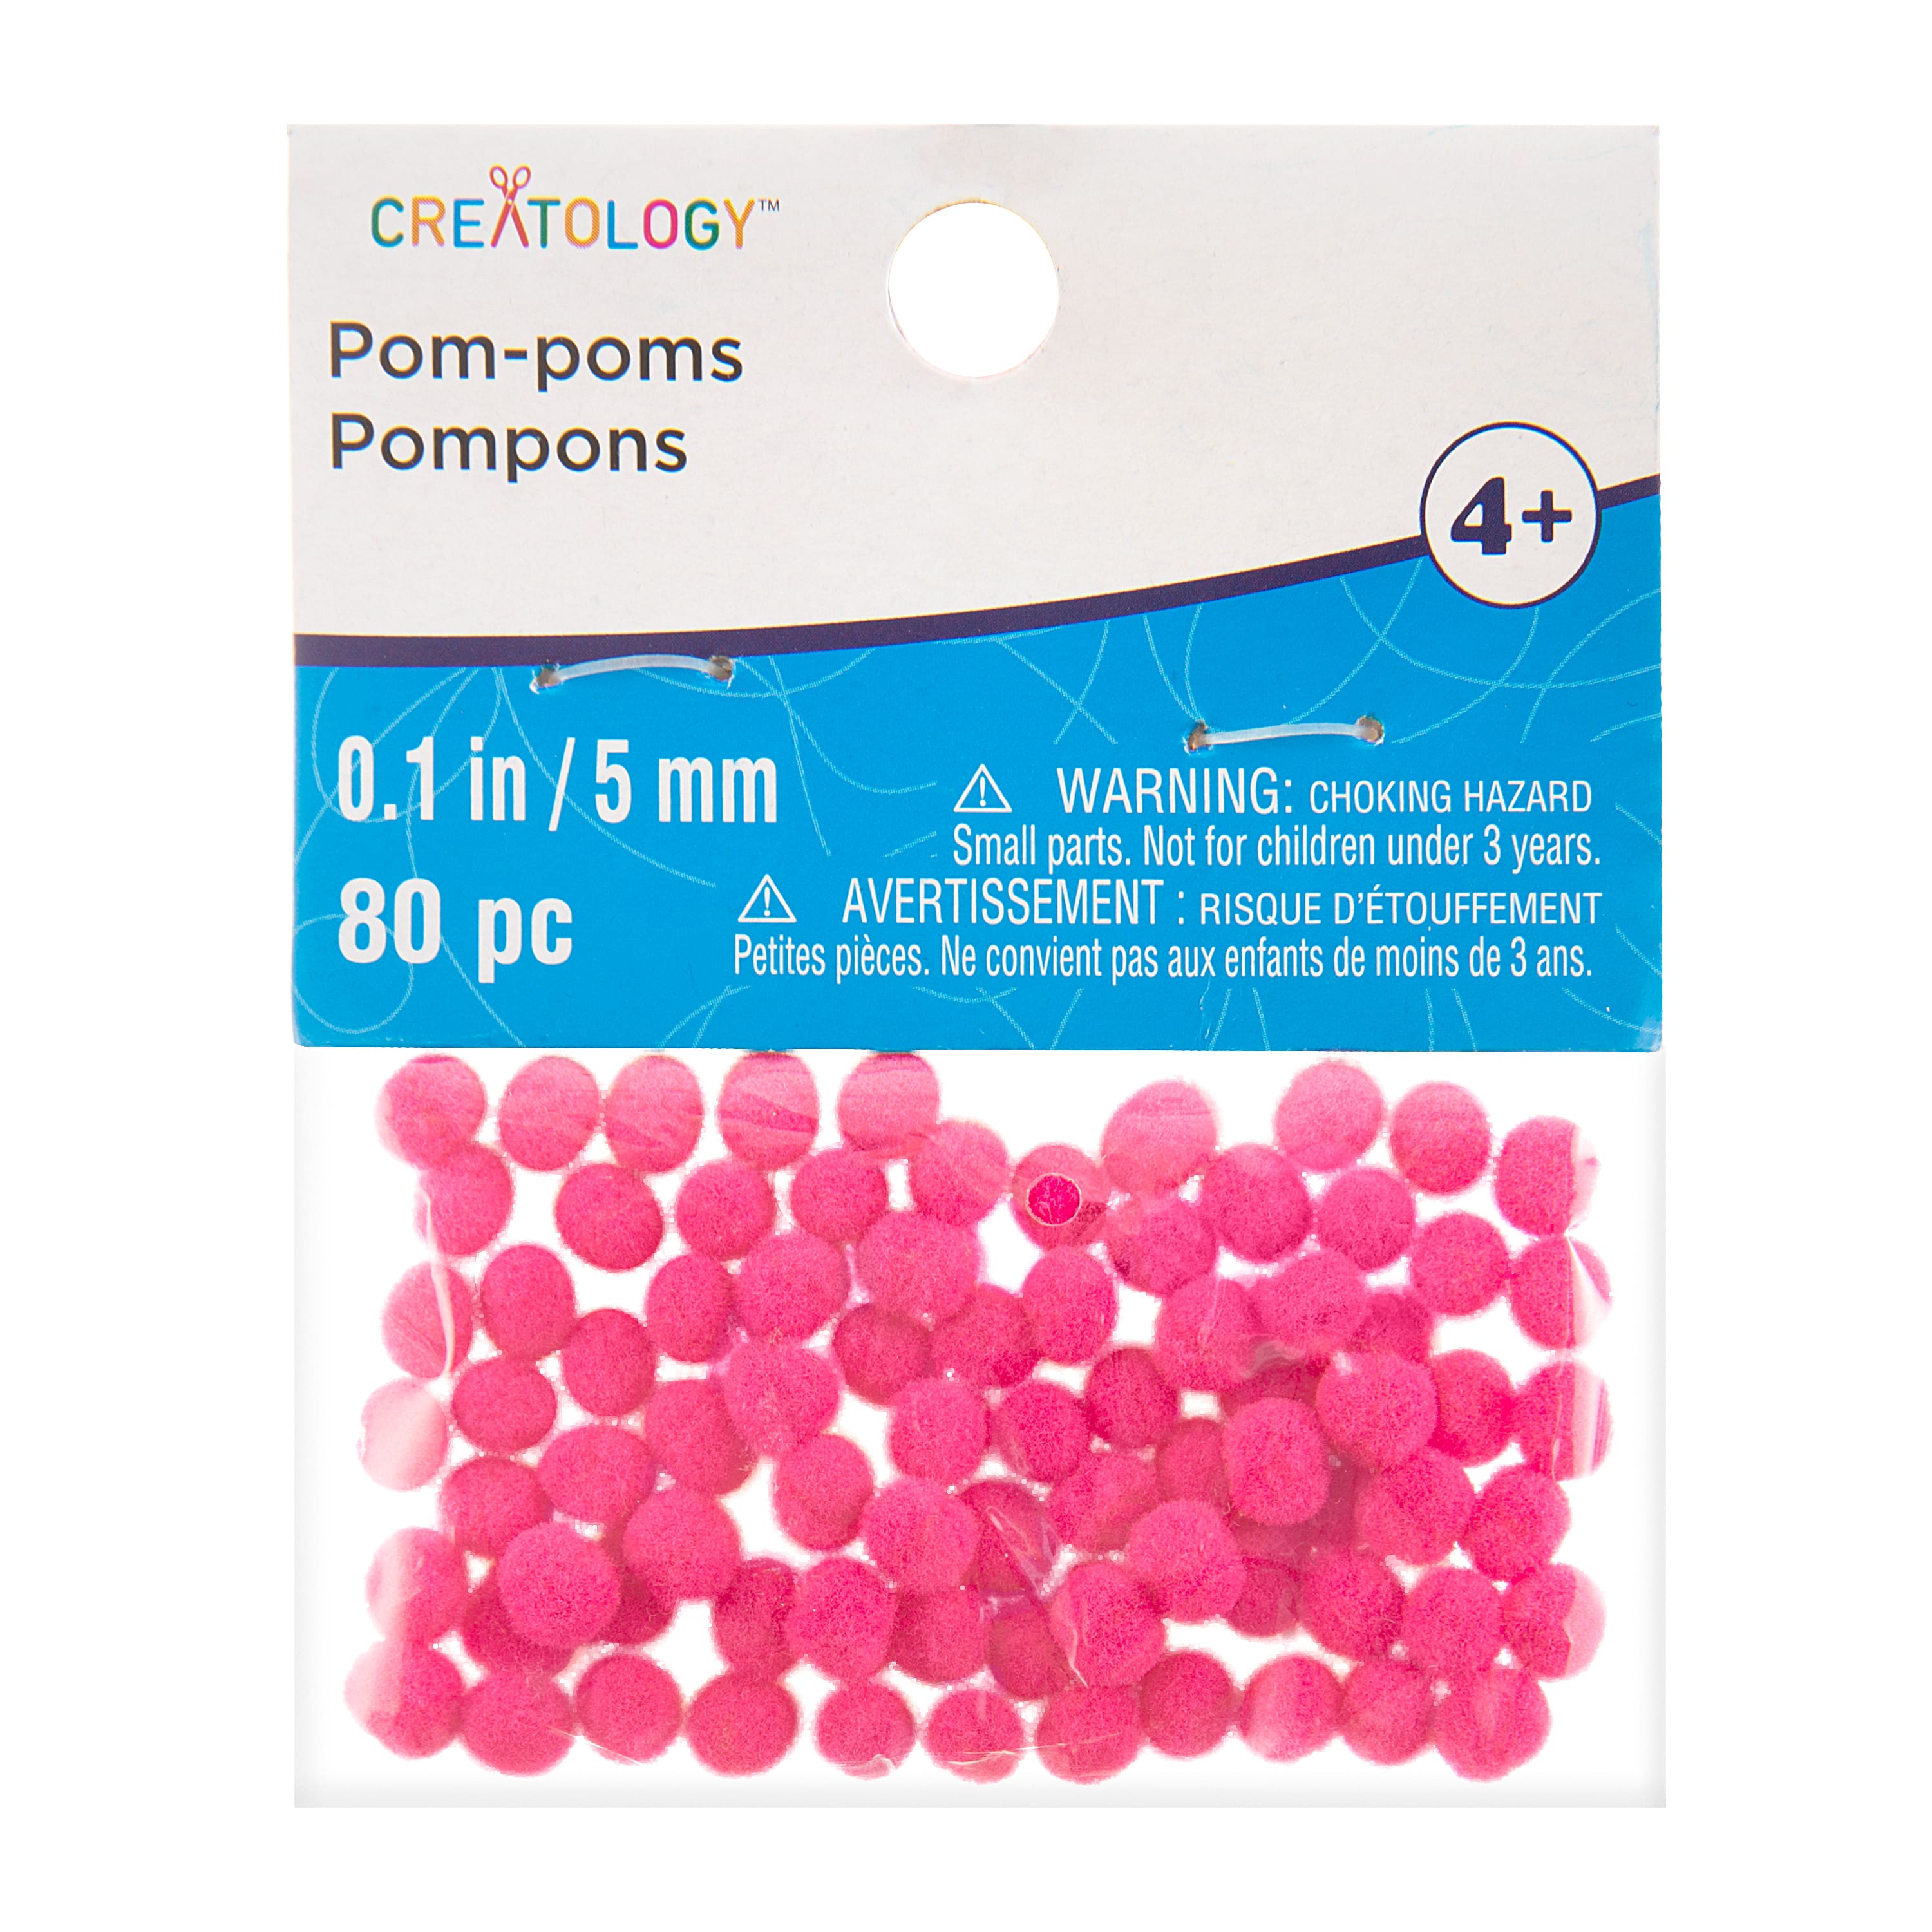 Mini Pom Poms by Creatology™